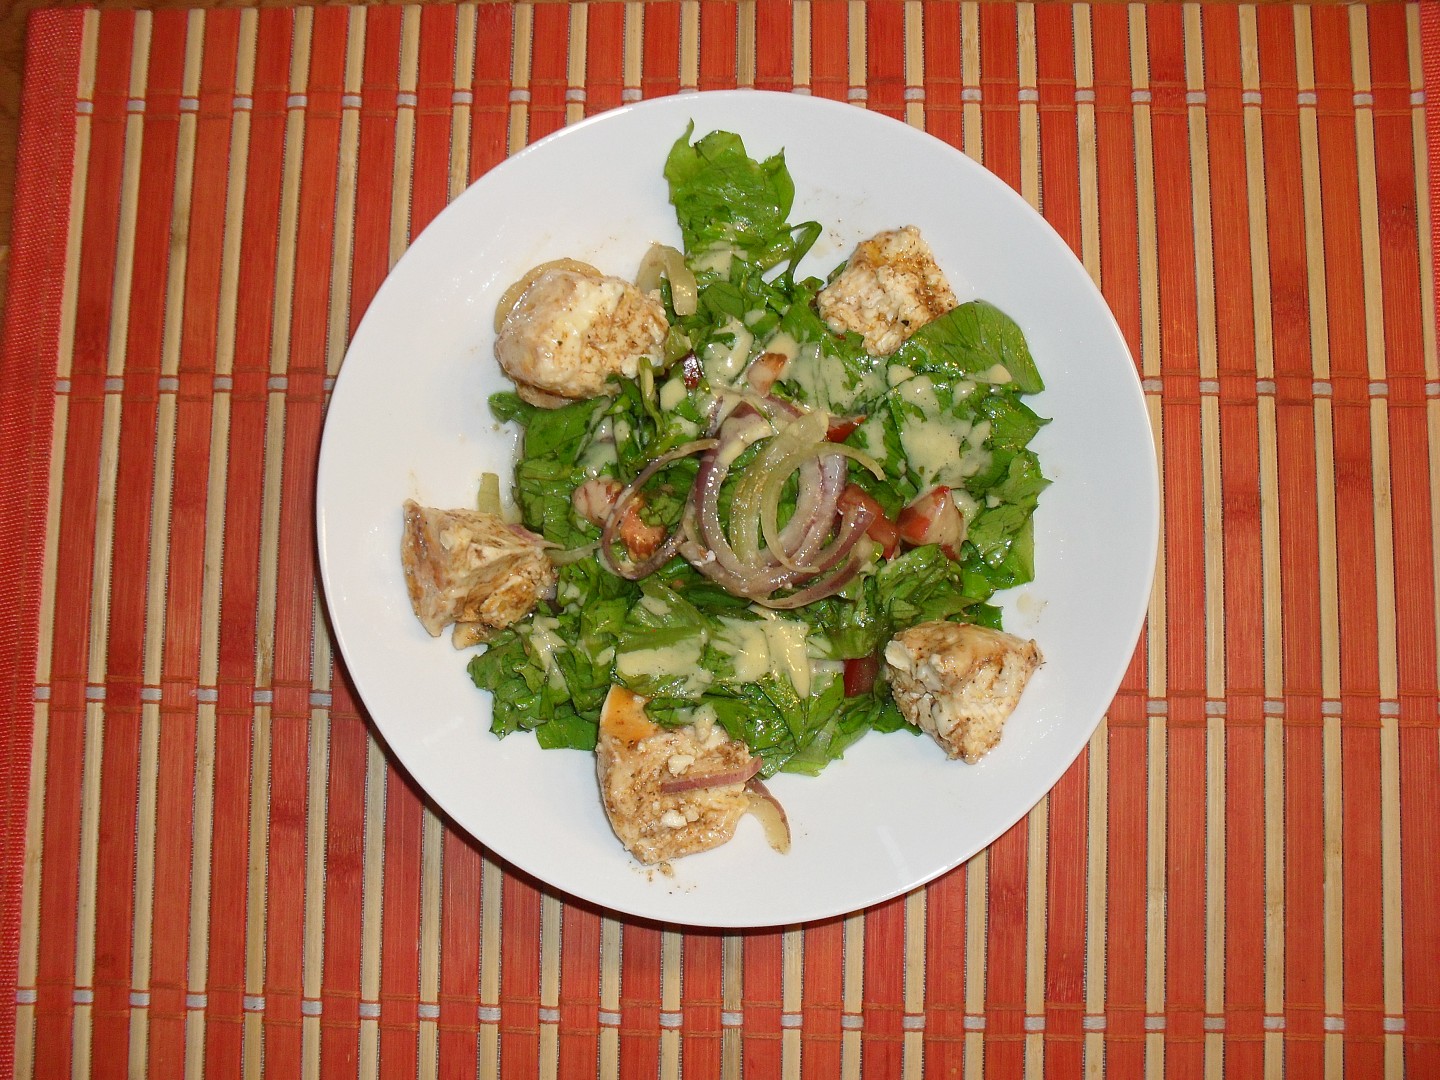 Zeleninový salát s nakládaným Hermelínem